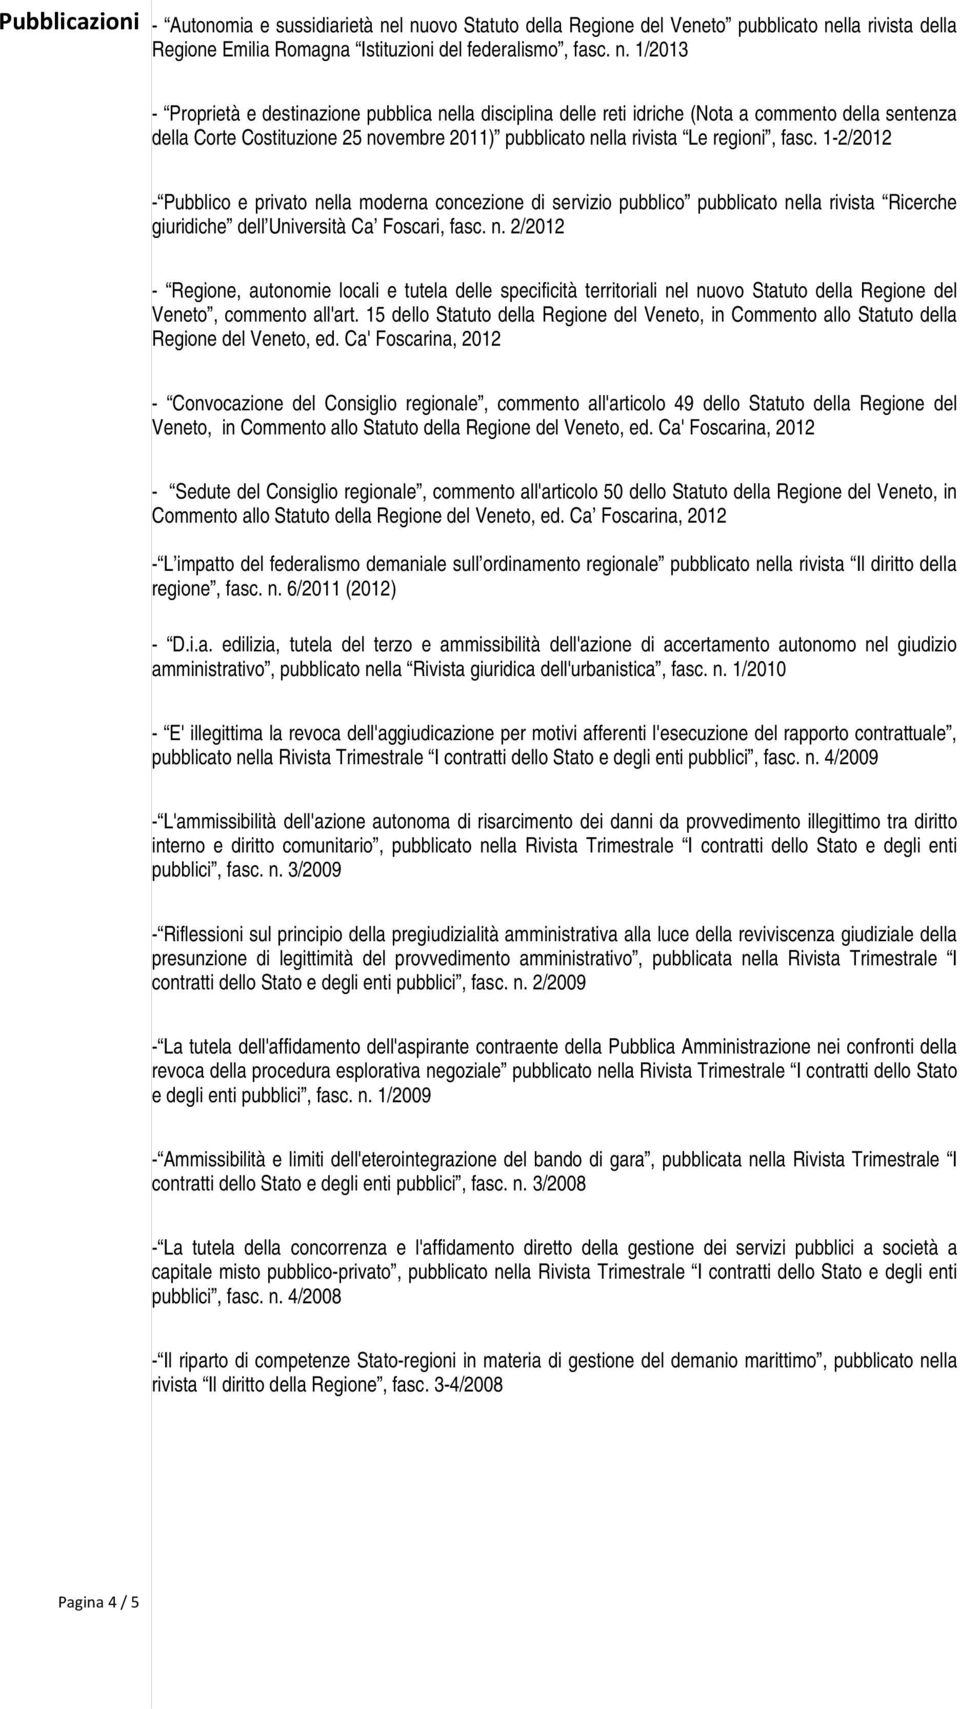 reti idriche (Nota a commento della sentenza della Corte Costituzione 25 novembre 2011) pubblicato nella rivista Le regioni, fasc.